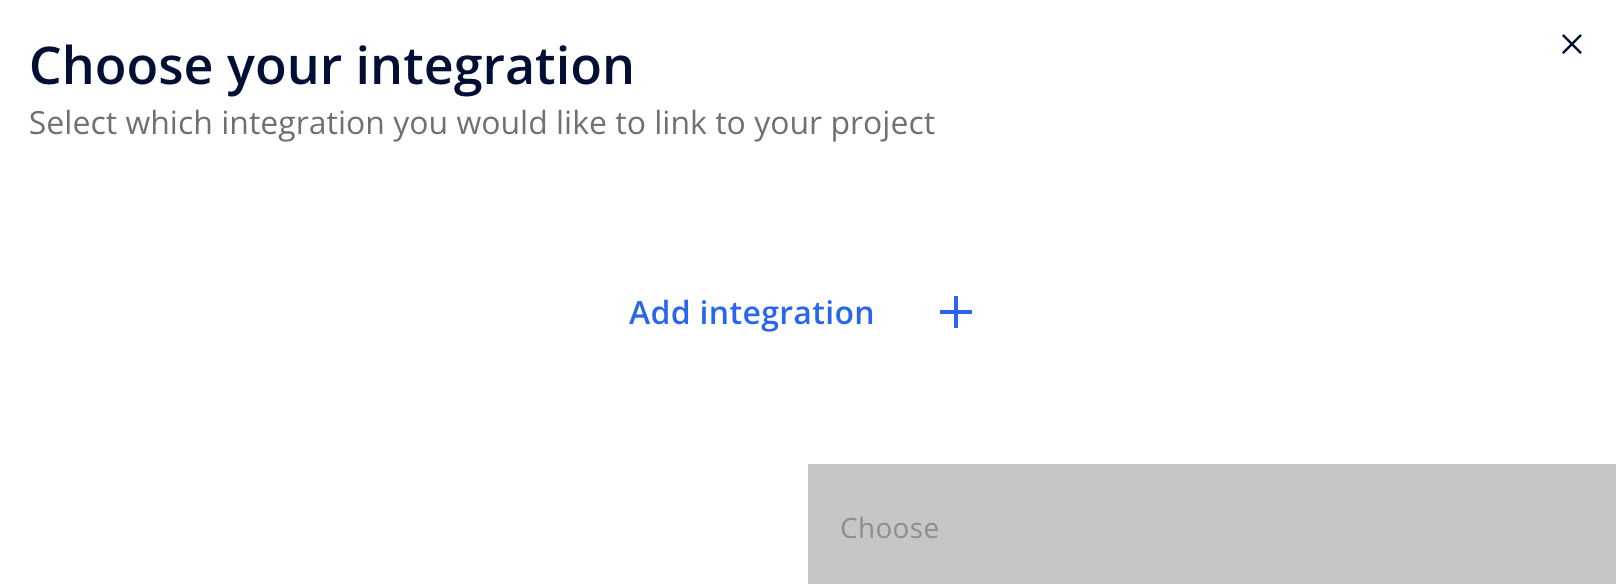 EN_-_Choose_integration.png